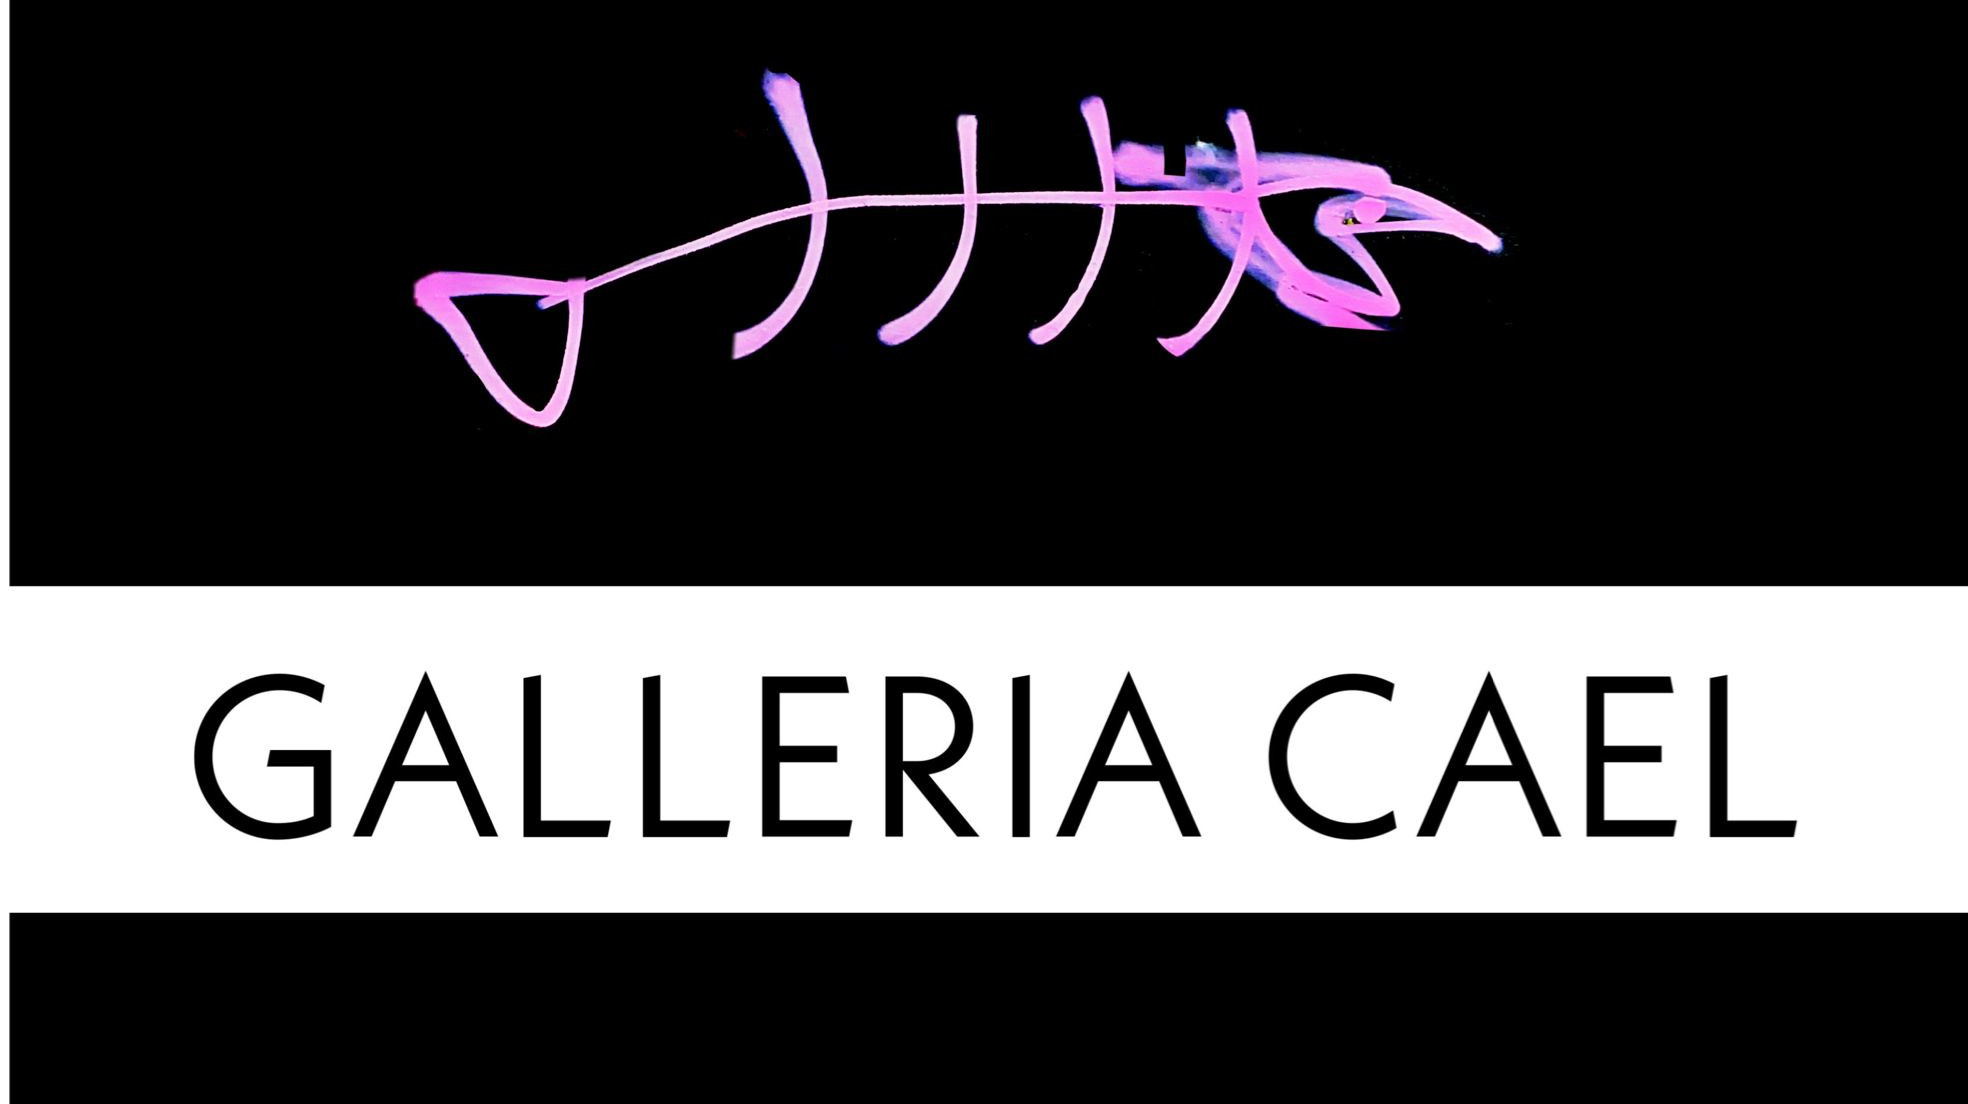 Galleria Cael